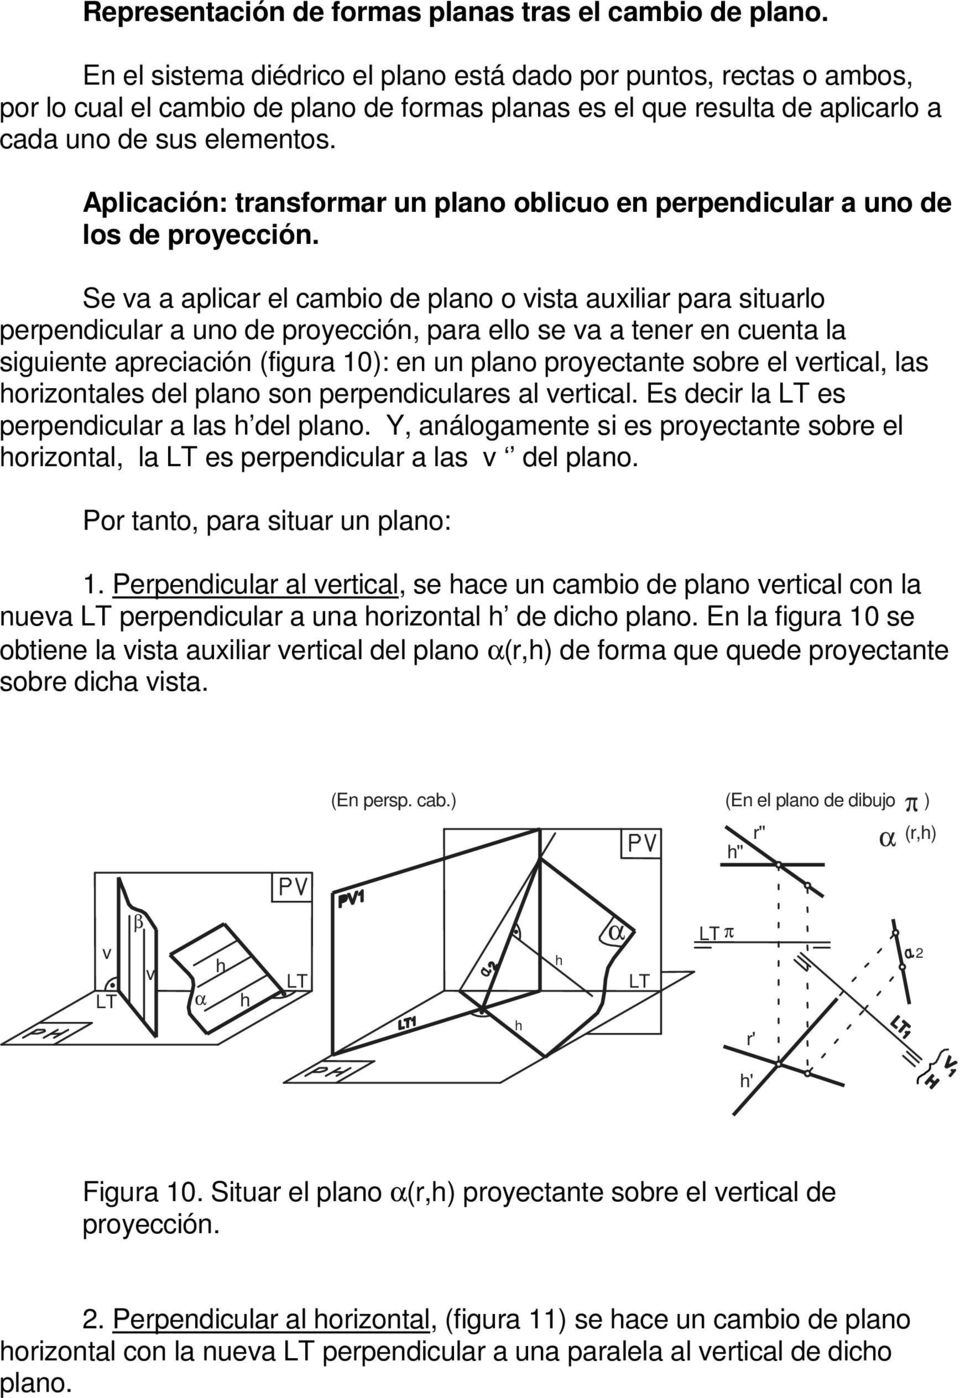 plicación: transformar un plano oblicuo en perpendicular a uno de los de proyección.